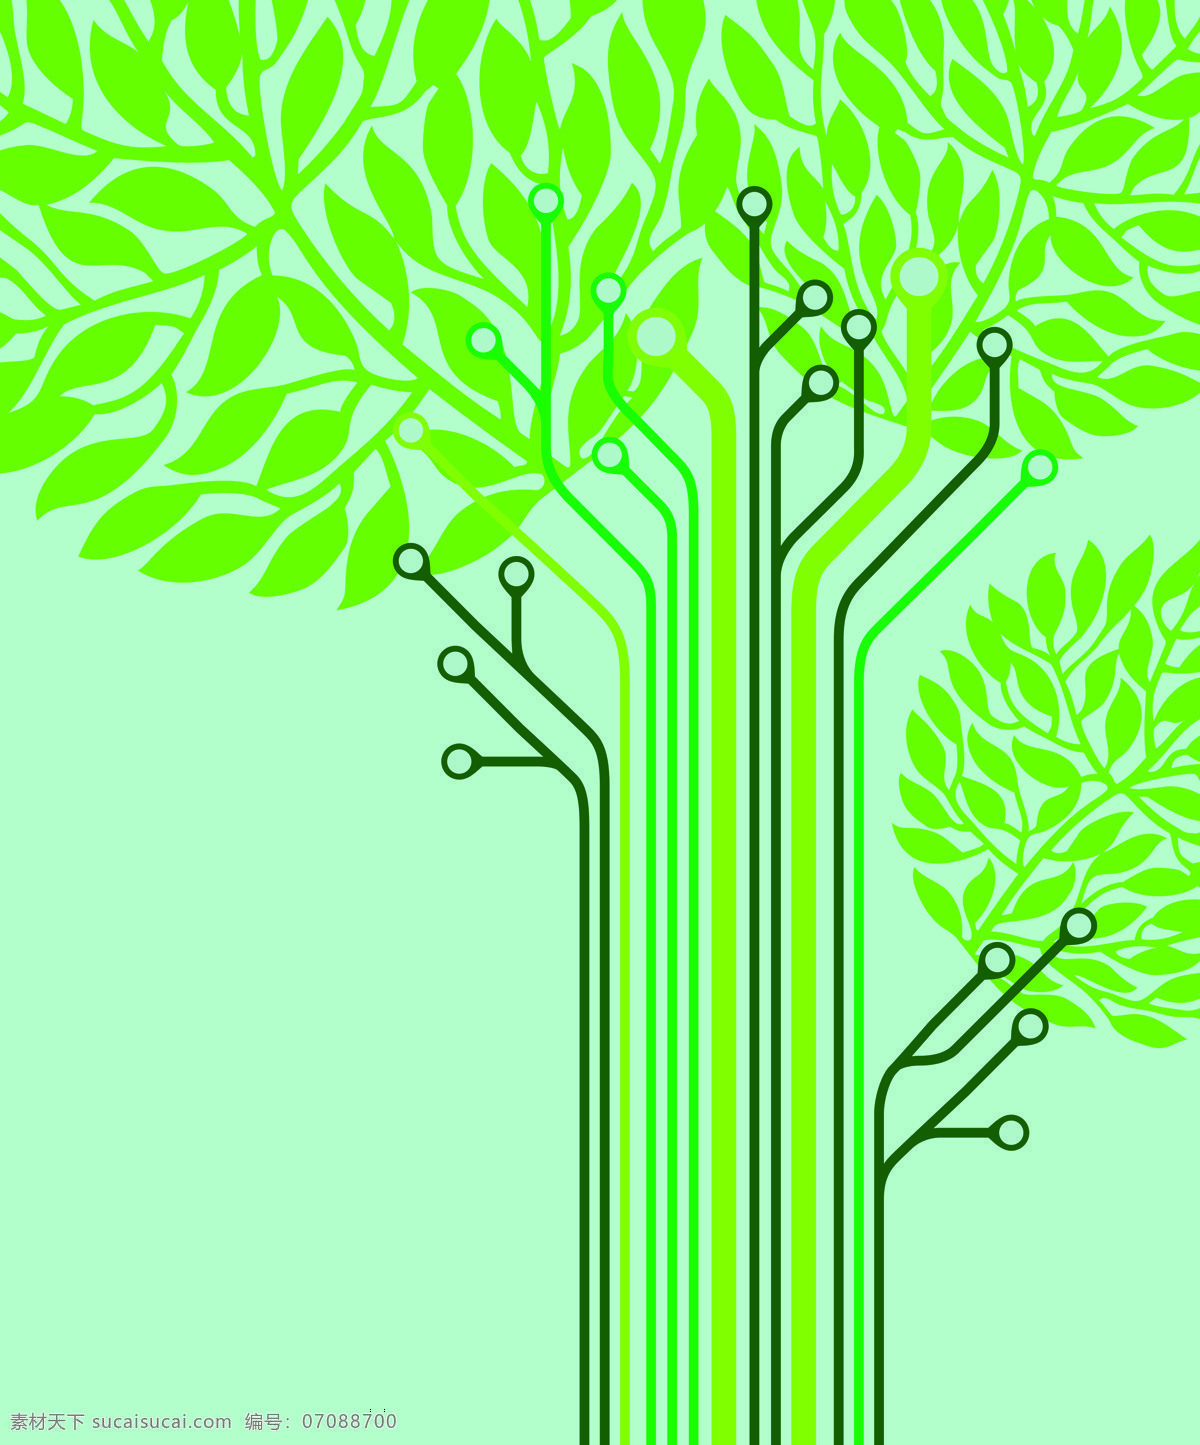 树 芯片 线路 树叶 树枝 绿色科技 环保 绿色电路 巨幅背景 设计用图